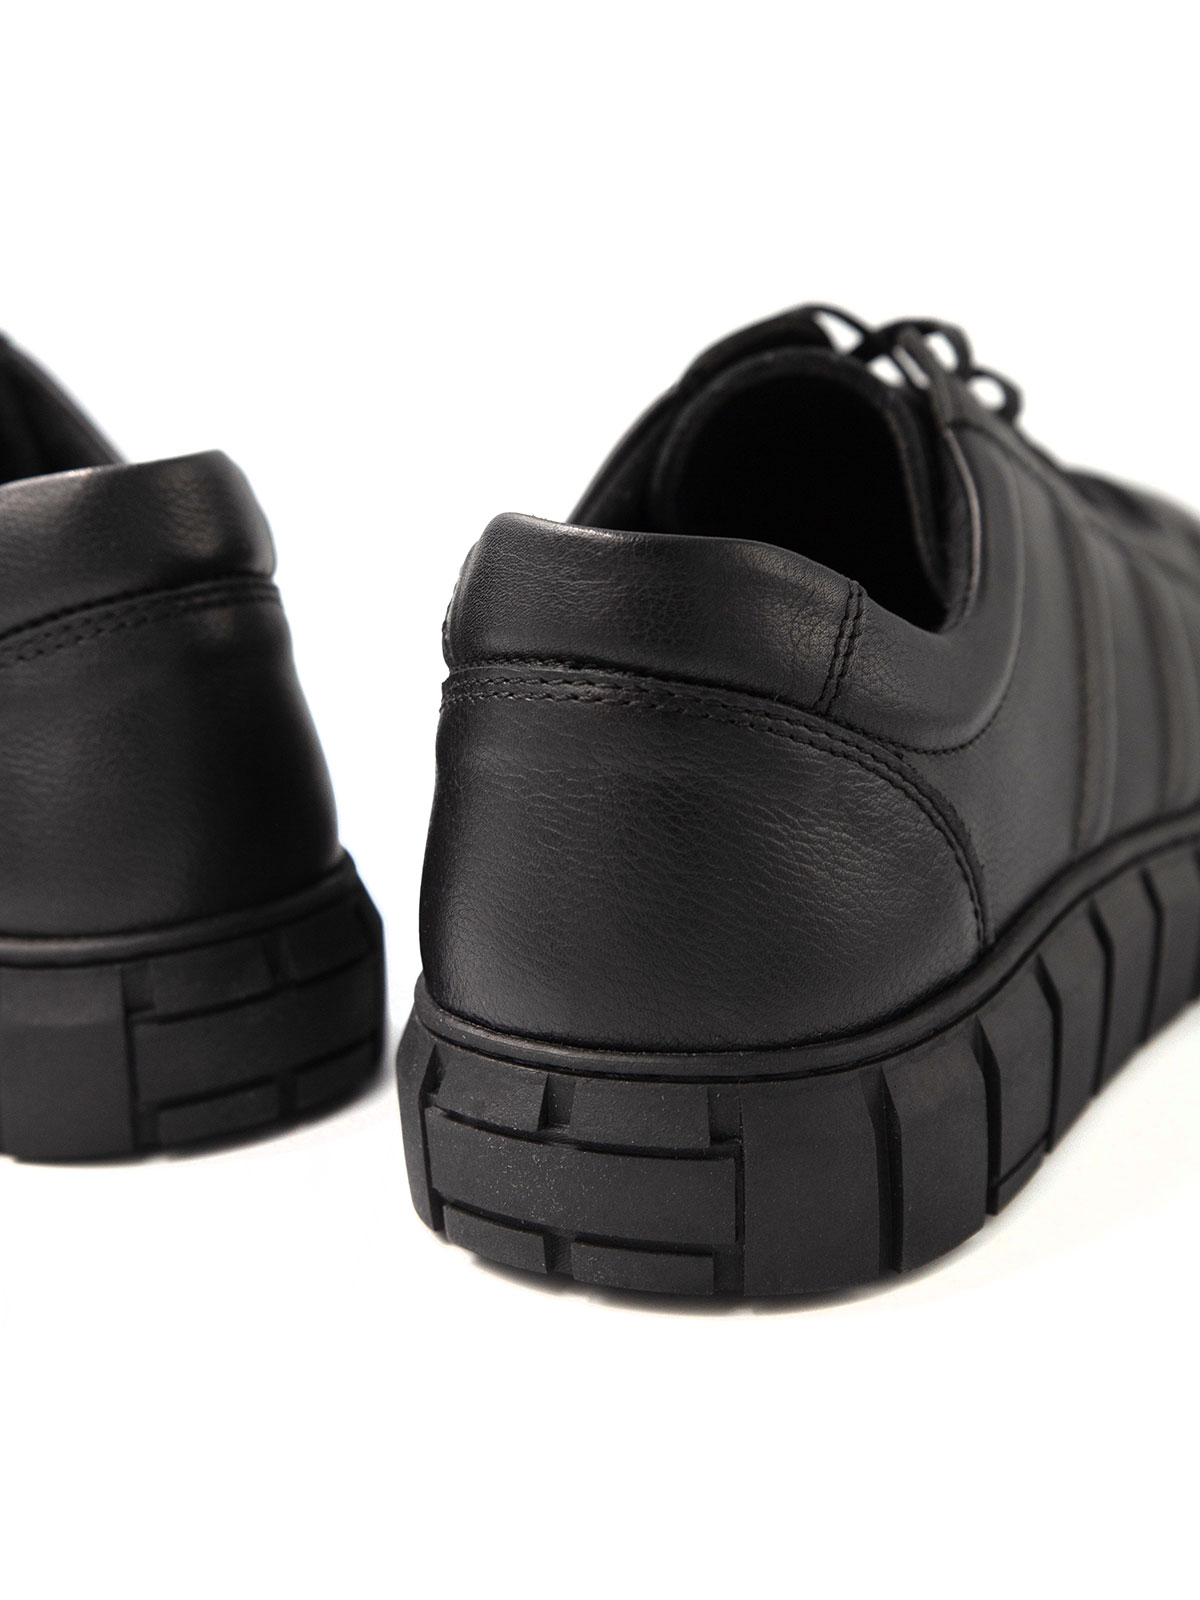 Μαύρα αθλητικά δερμάτινα παπούτσια - 81097 - € 51.74 img4